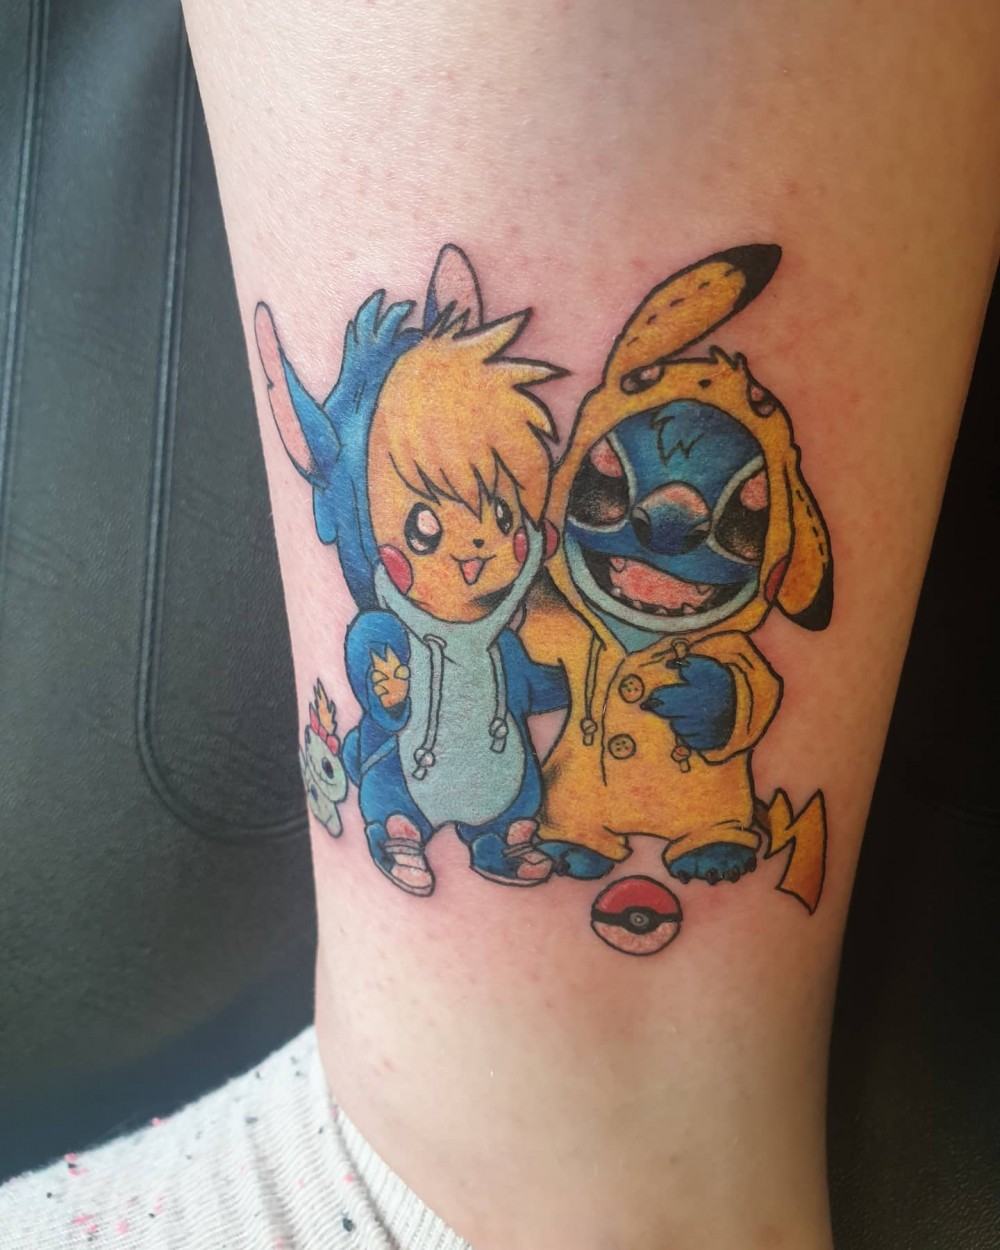 Thiết kế hình xăm Stitch và Pikachu